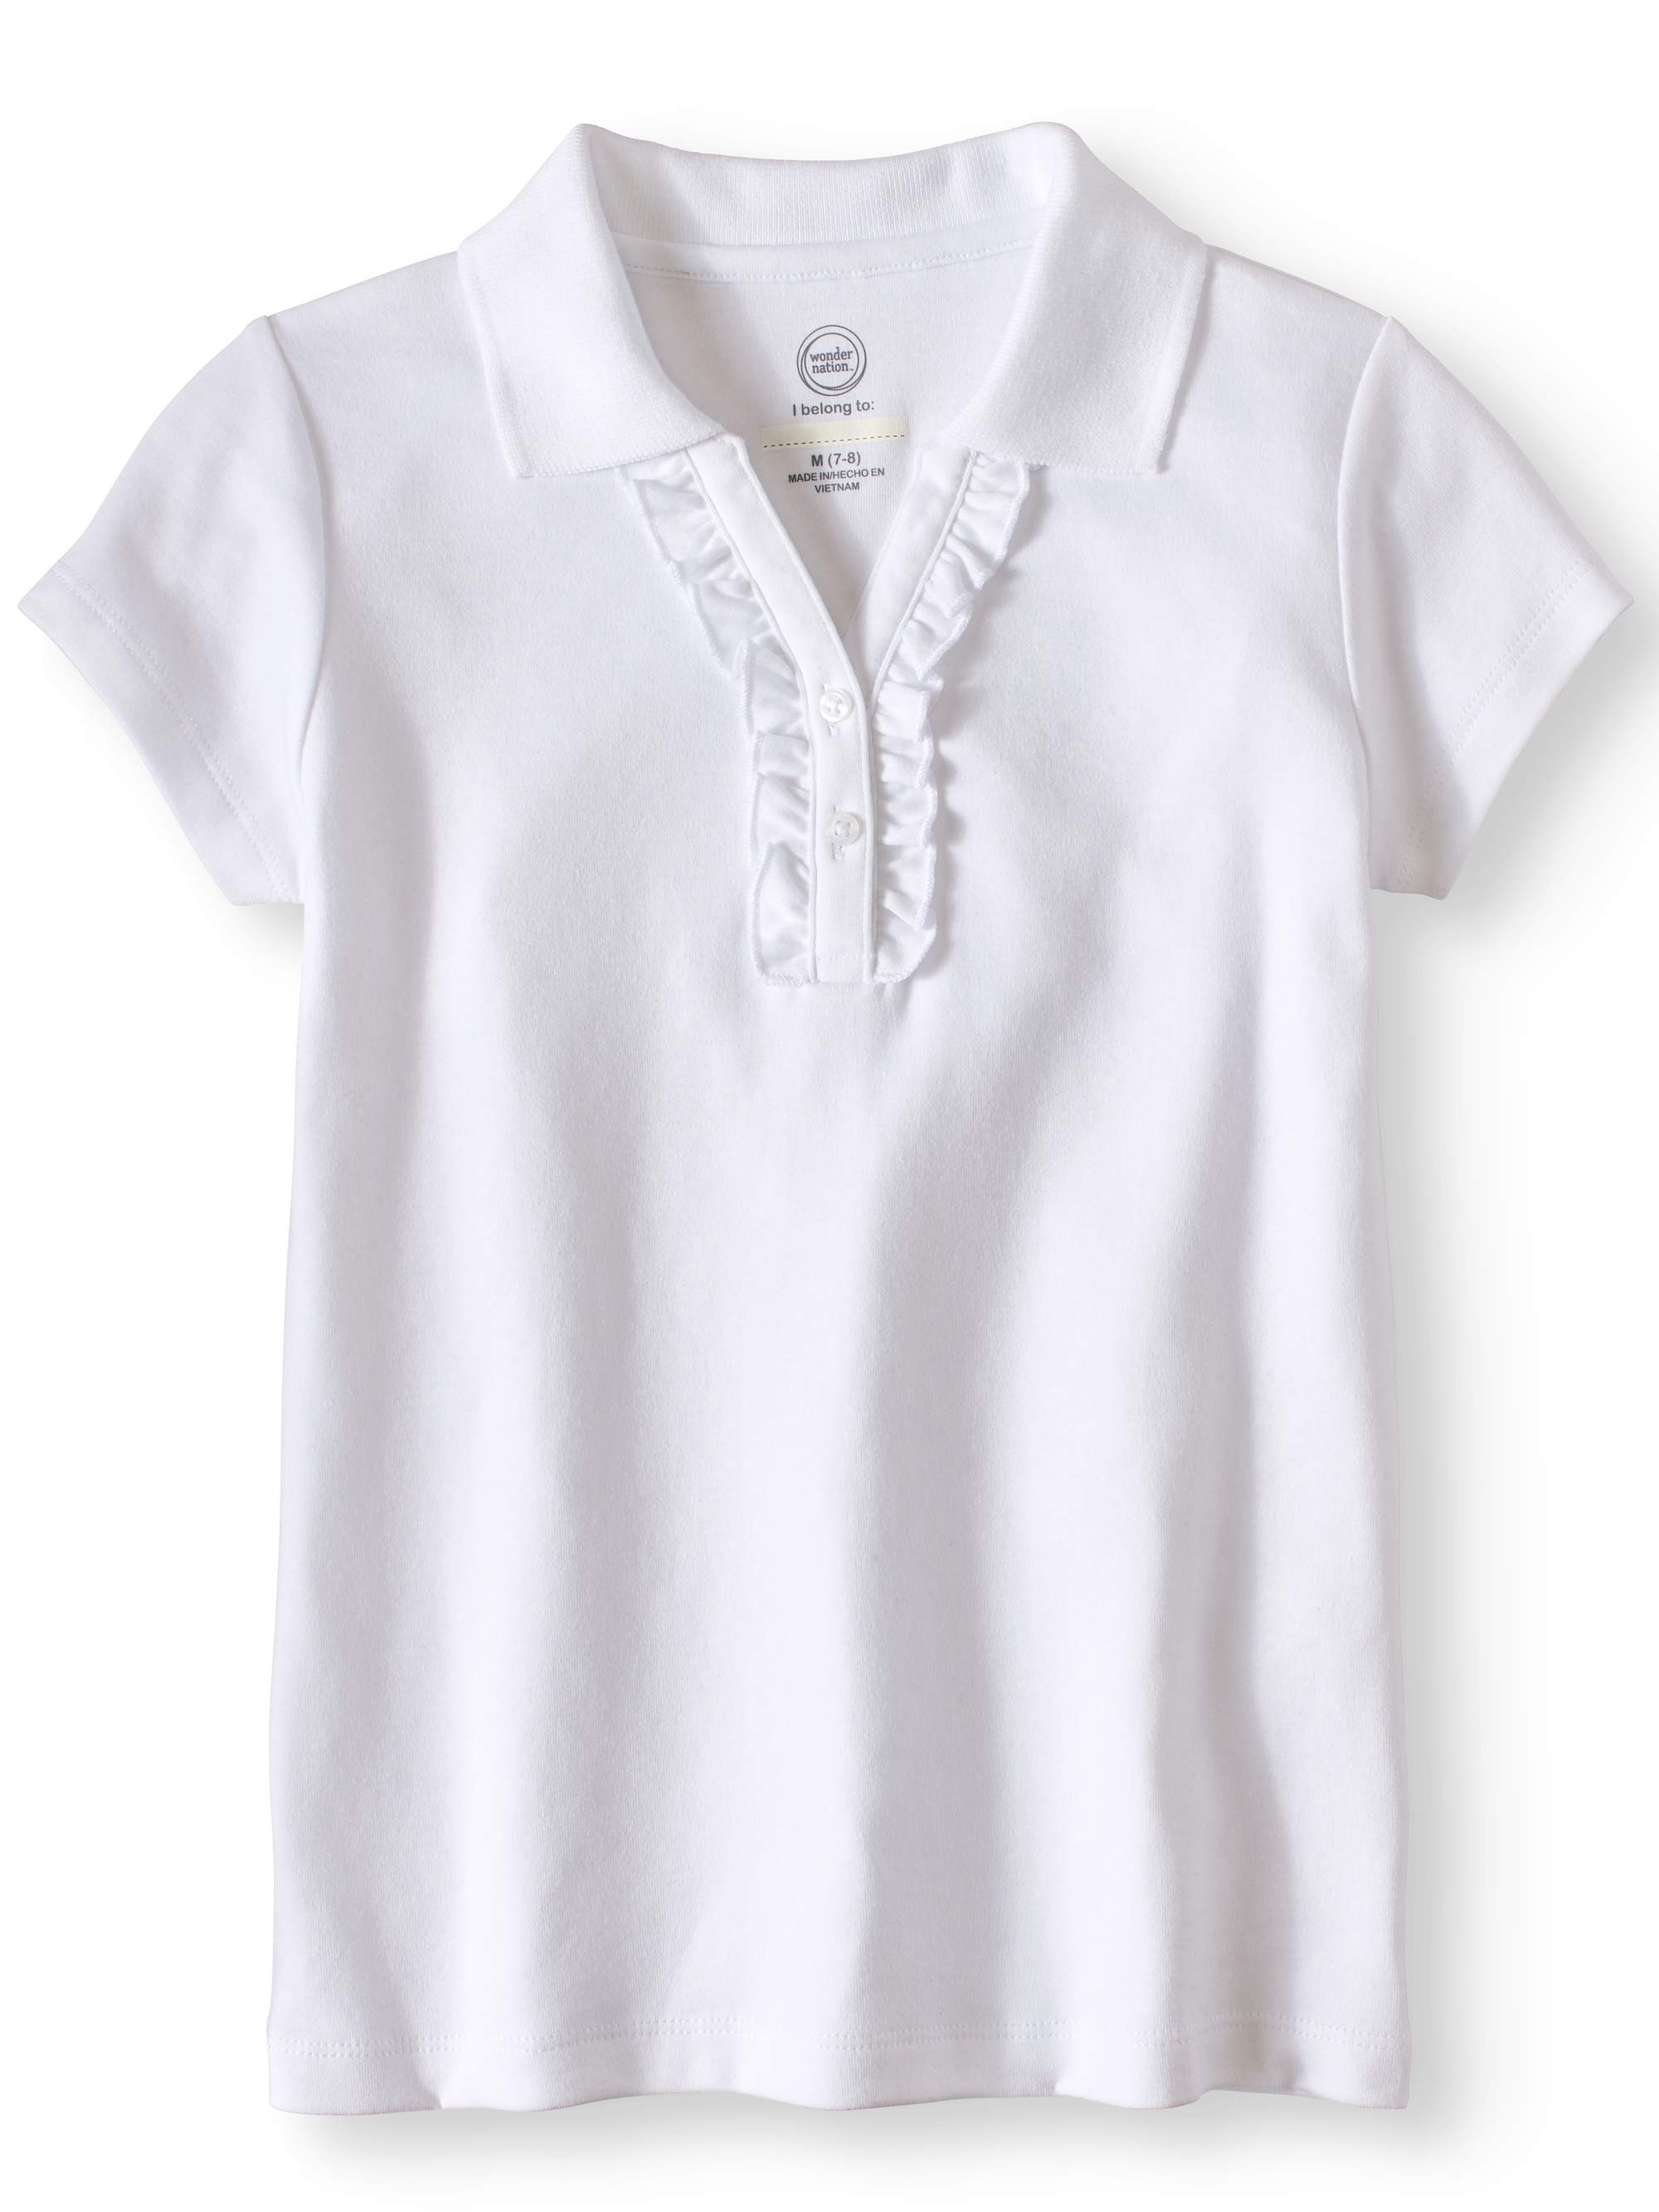 Wonder Nation Girls School Uniform Short Sleeve Ruffle Polo Shirt, Sizes 4-18 - image 1 of 2